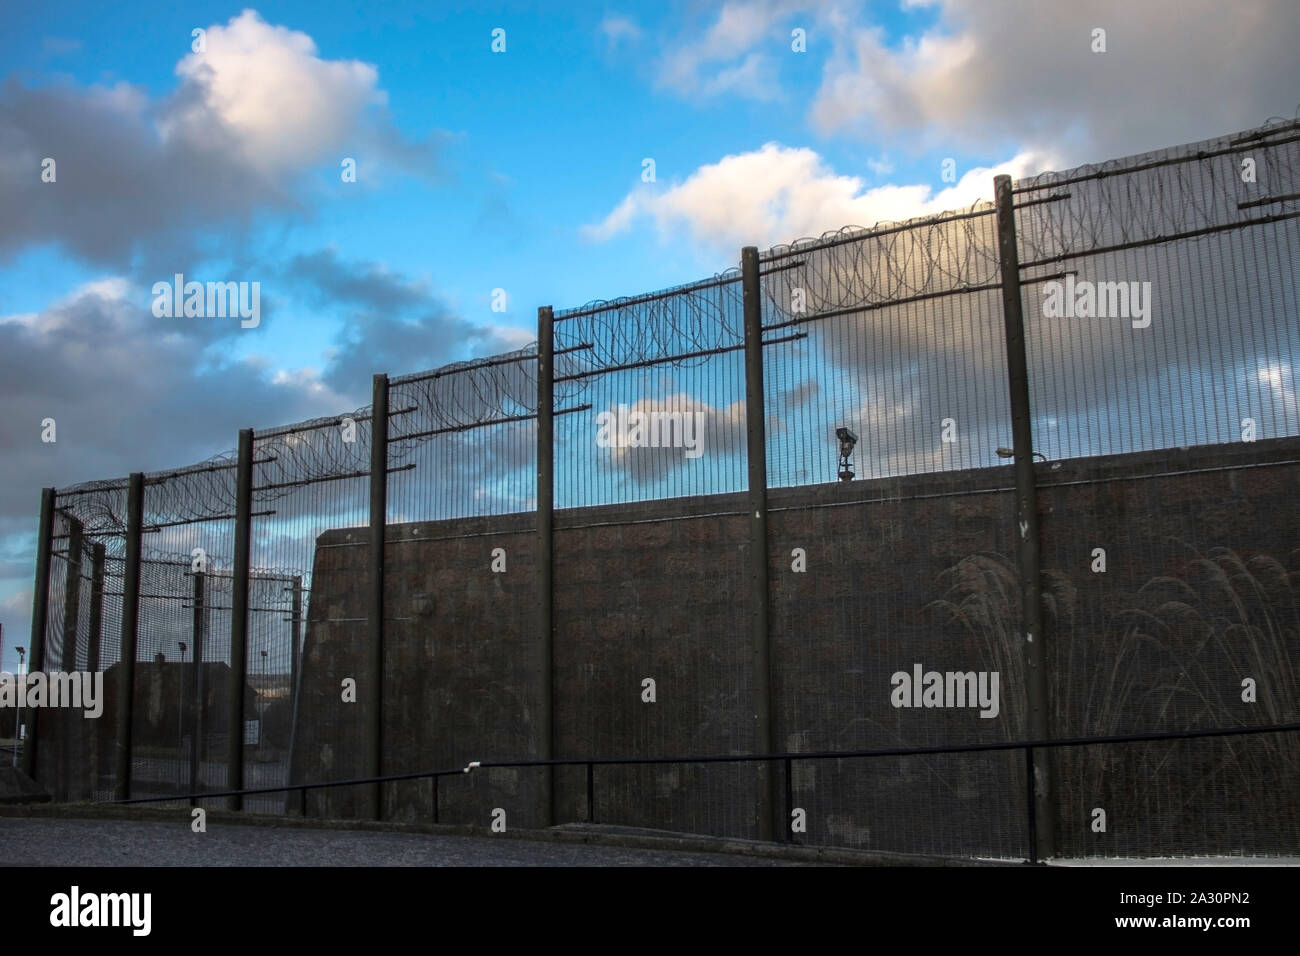 Gefängnismauern und einen Zaun mit Spikes auf dem Hintergrund des blauen Himmels. Peterhead Gefängnis Museum, Aberdeenshire, Schottland, Vereinigtes Königreich. Stockfoto